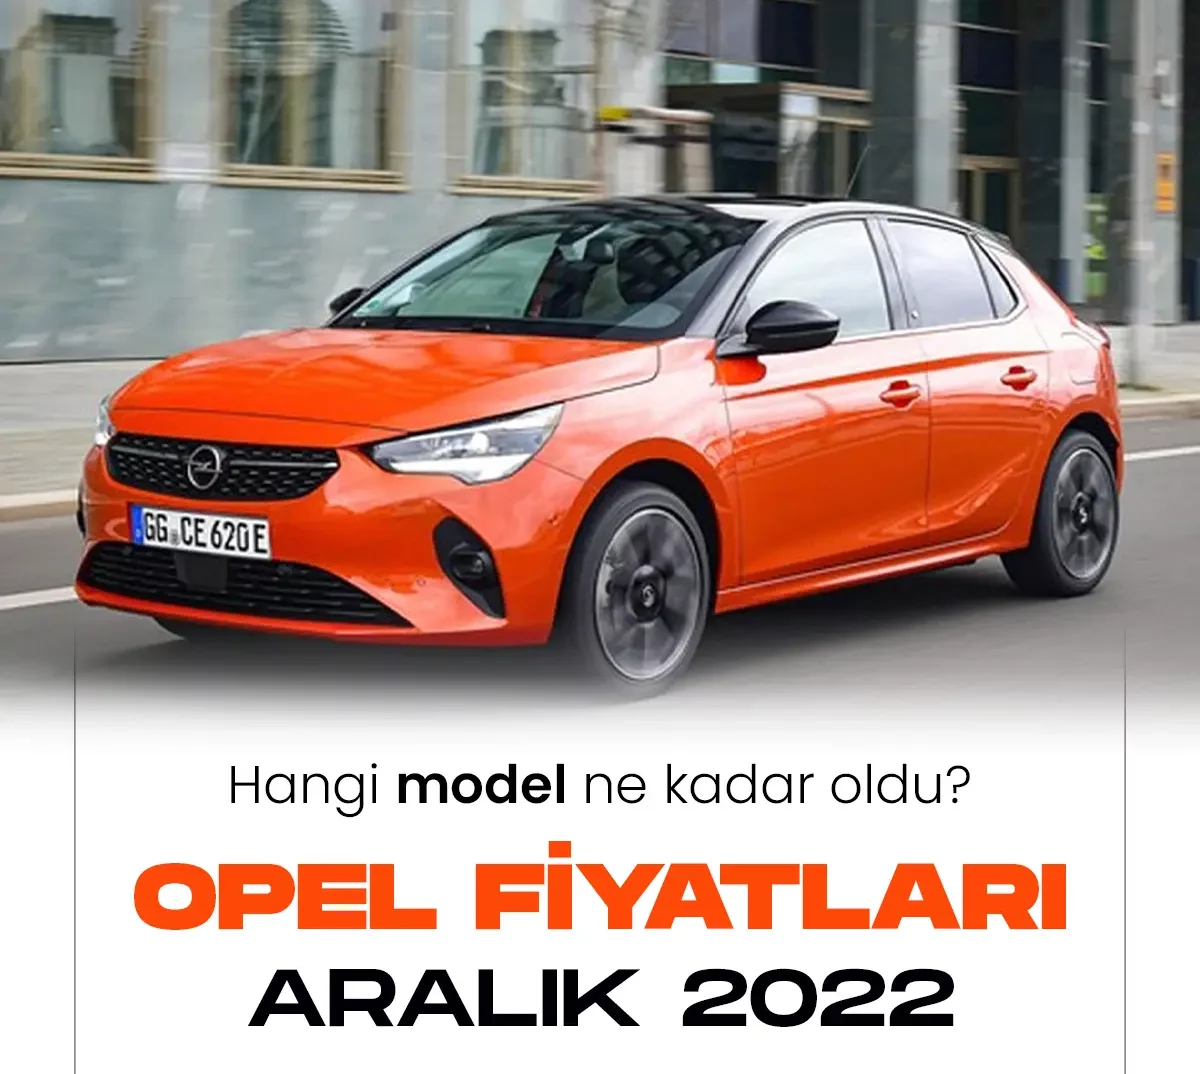 Opel Aralık 2022 fiyat listesi.